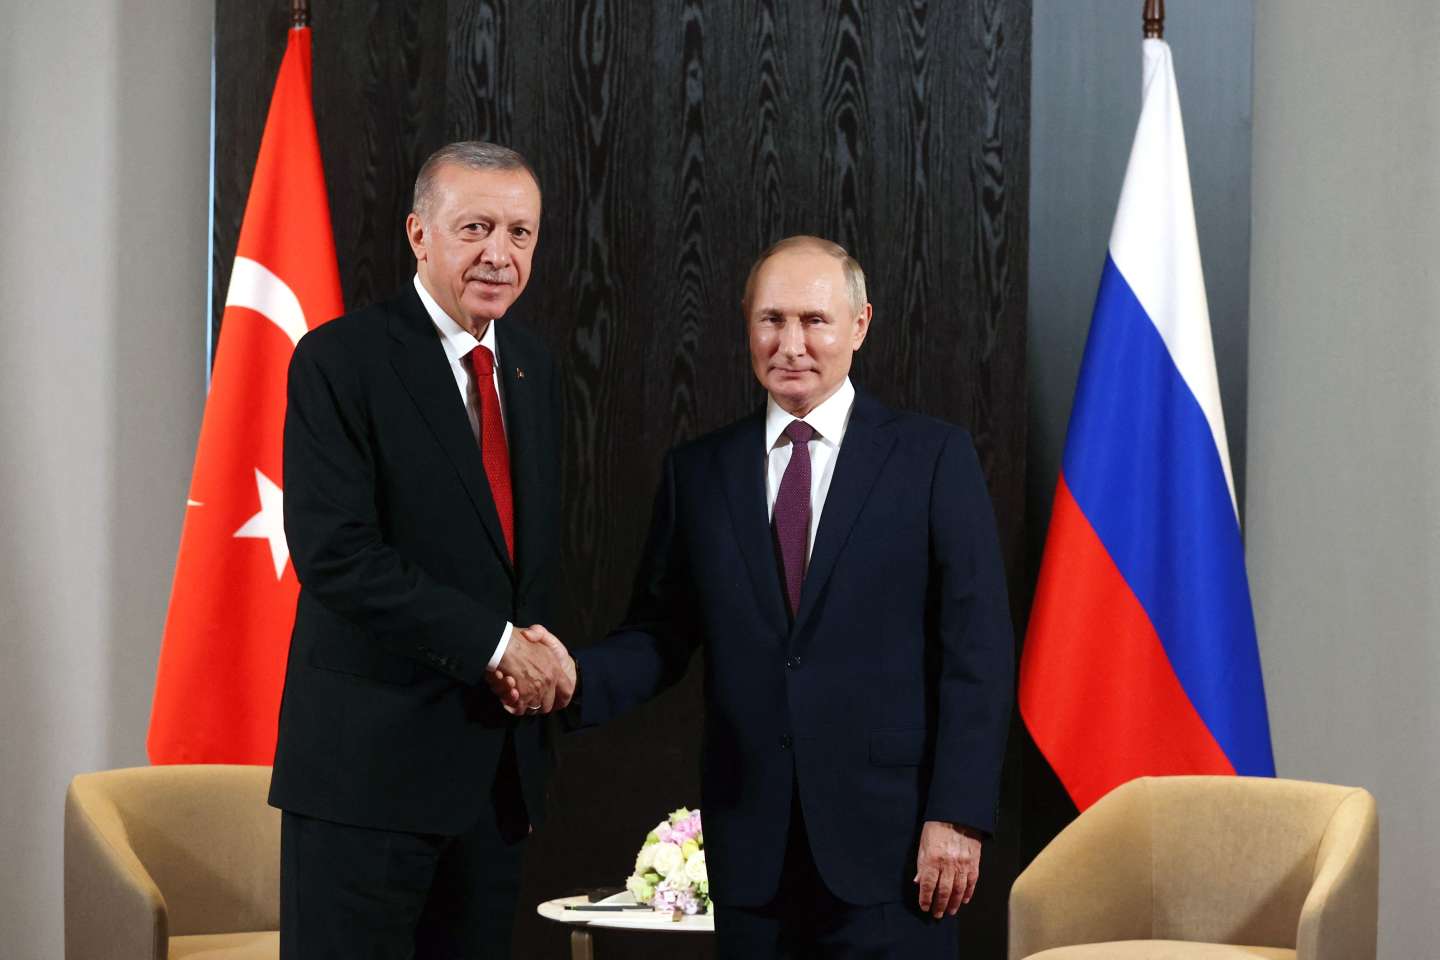 Kết quả bầu cử tổng thống ở Thổ Nhĩ Kỳ liệu có ảnh hưởng đến quan hệ với Nga? - 1